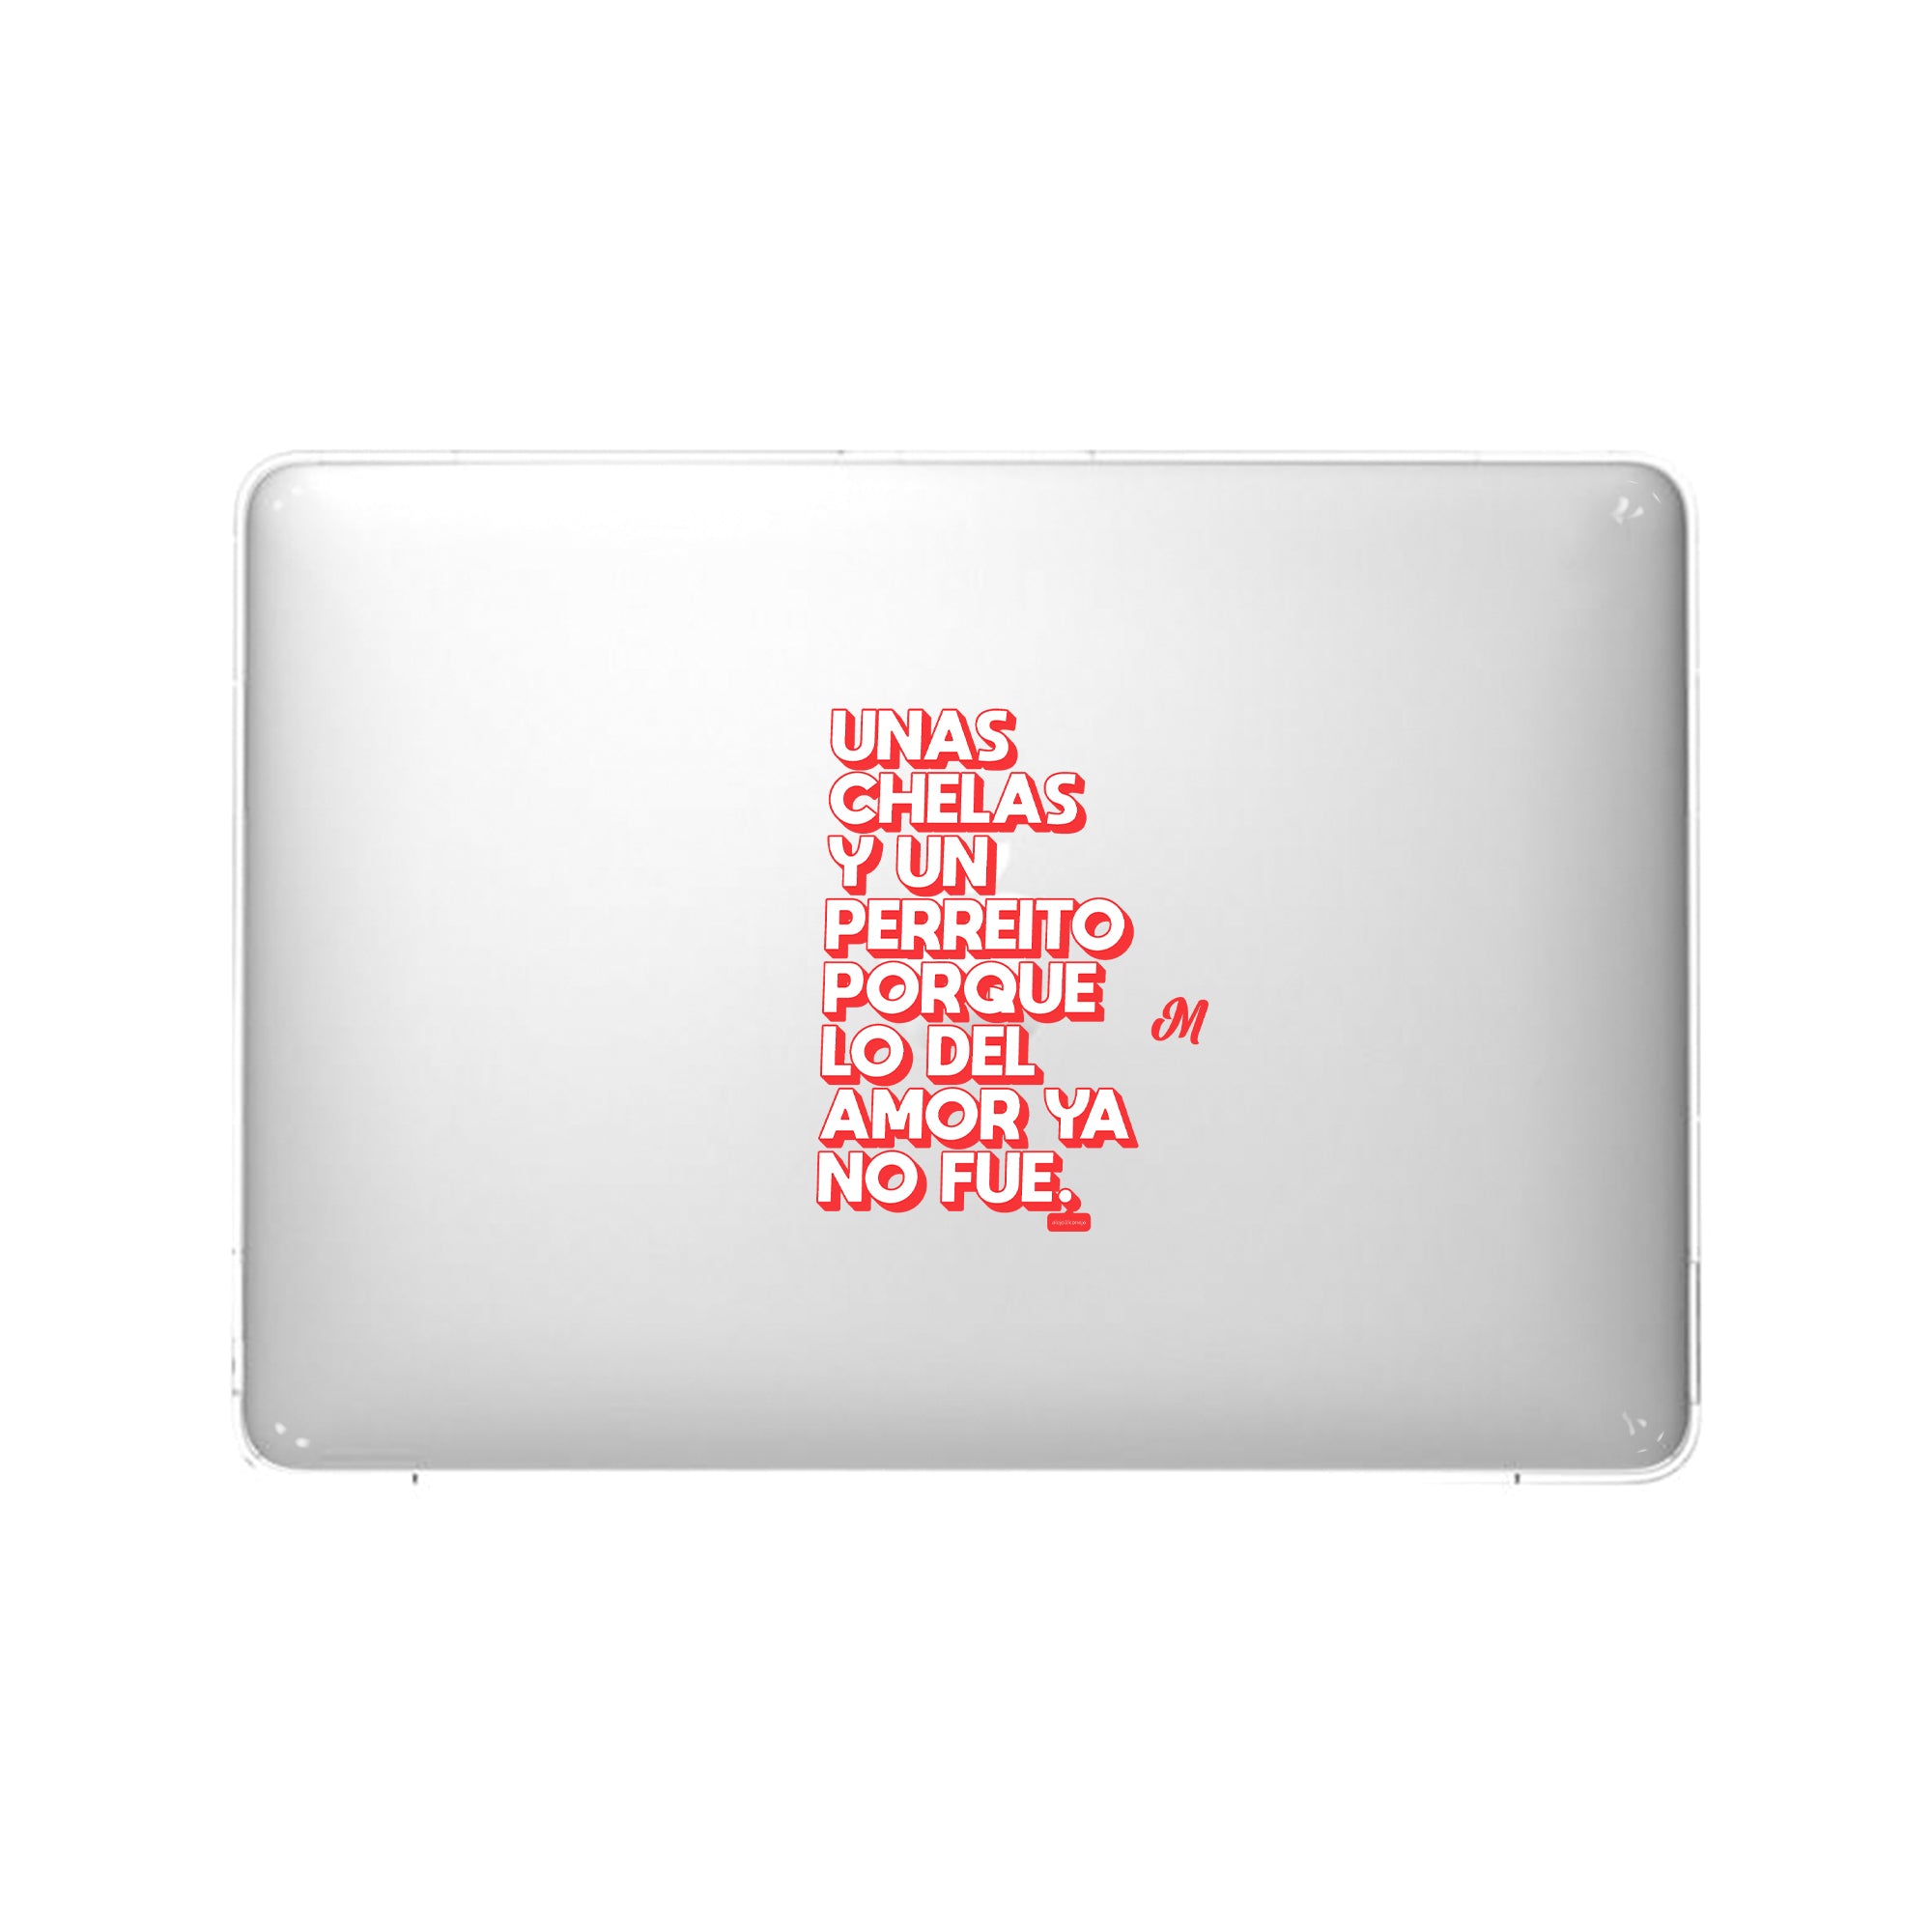 Perreo y Polas MacBook Case - Mandala Cases